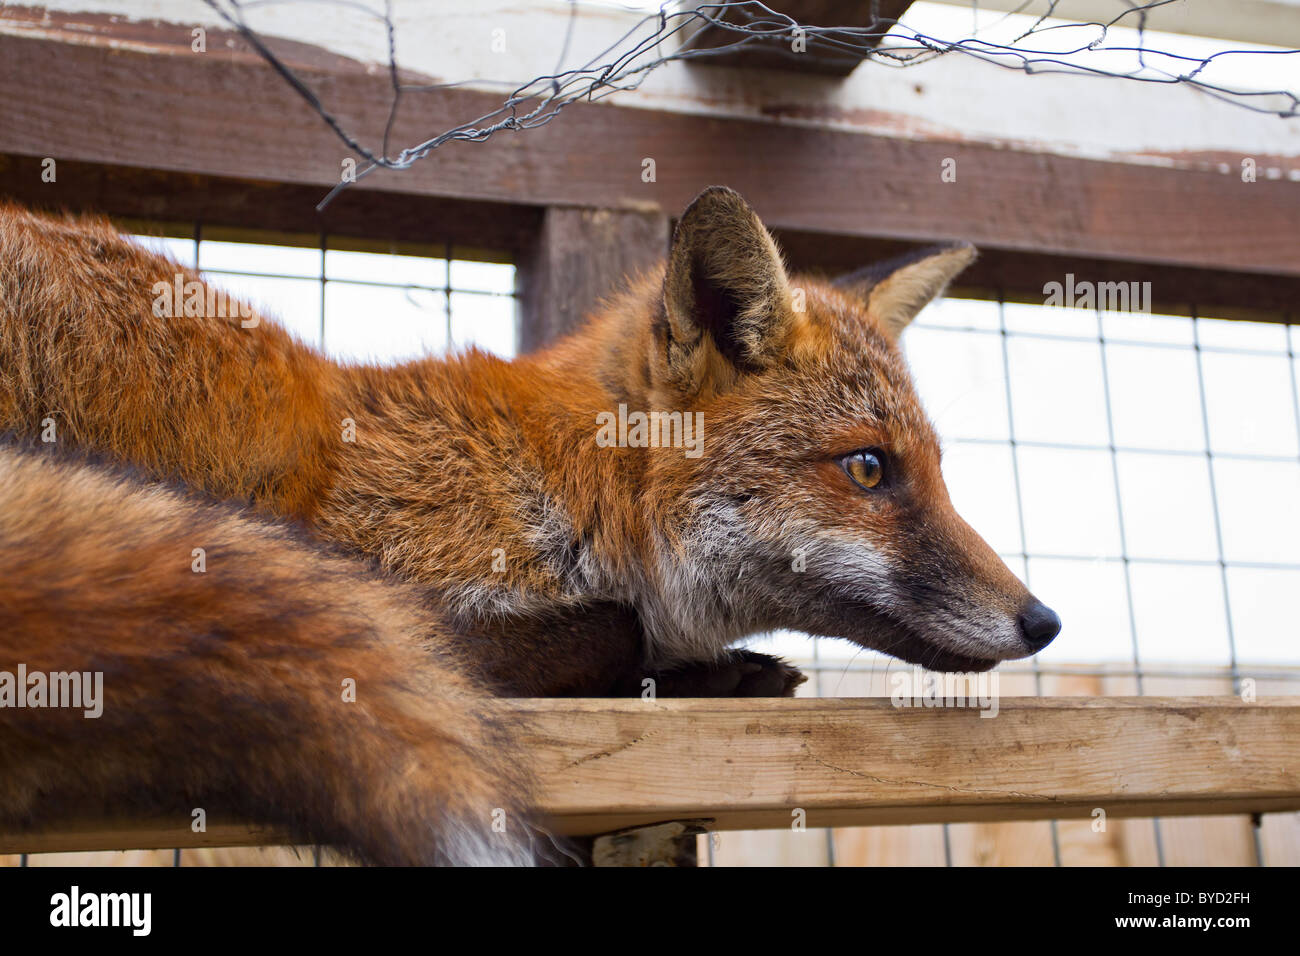 Red Fox ( Vulpes vulpes ) in pen Stock Photo